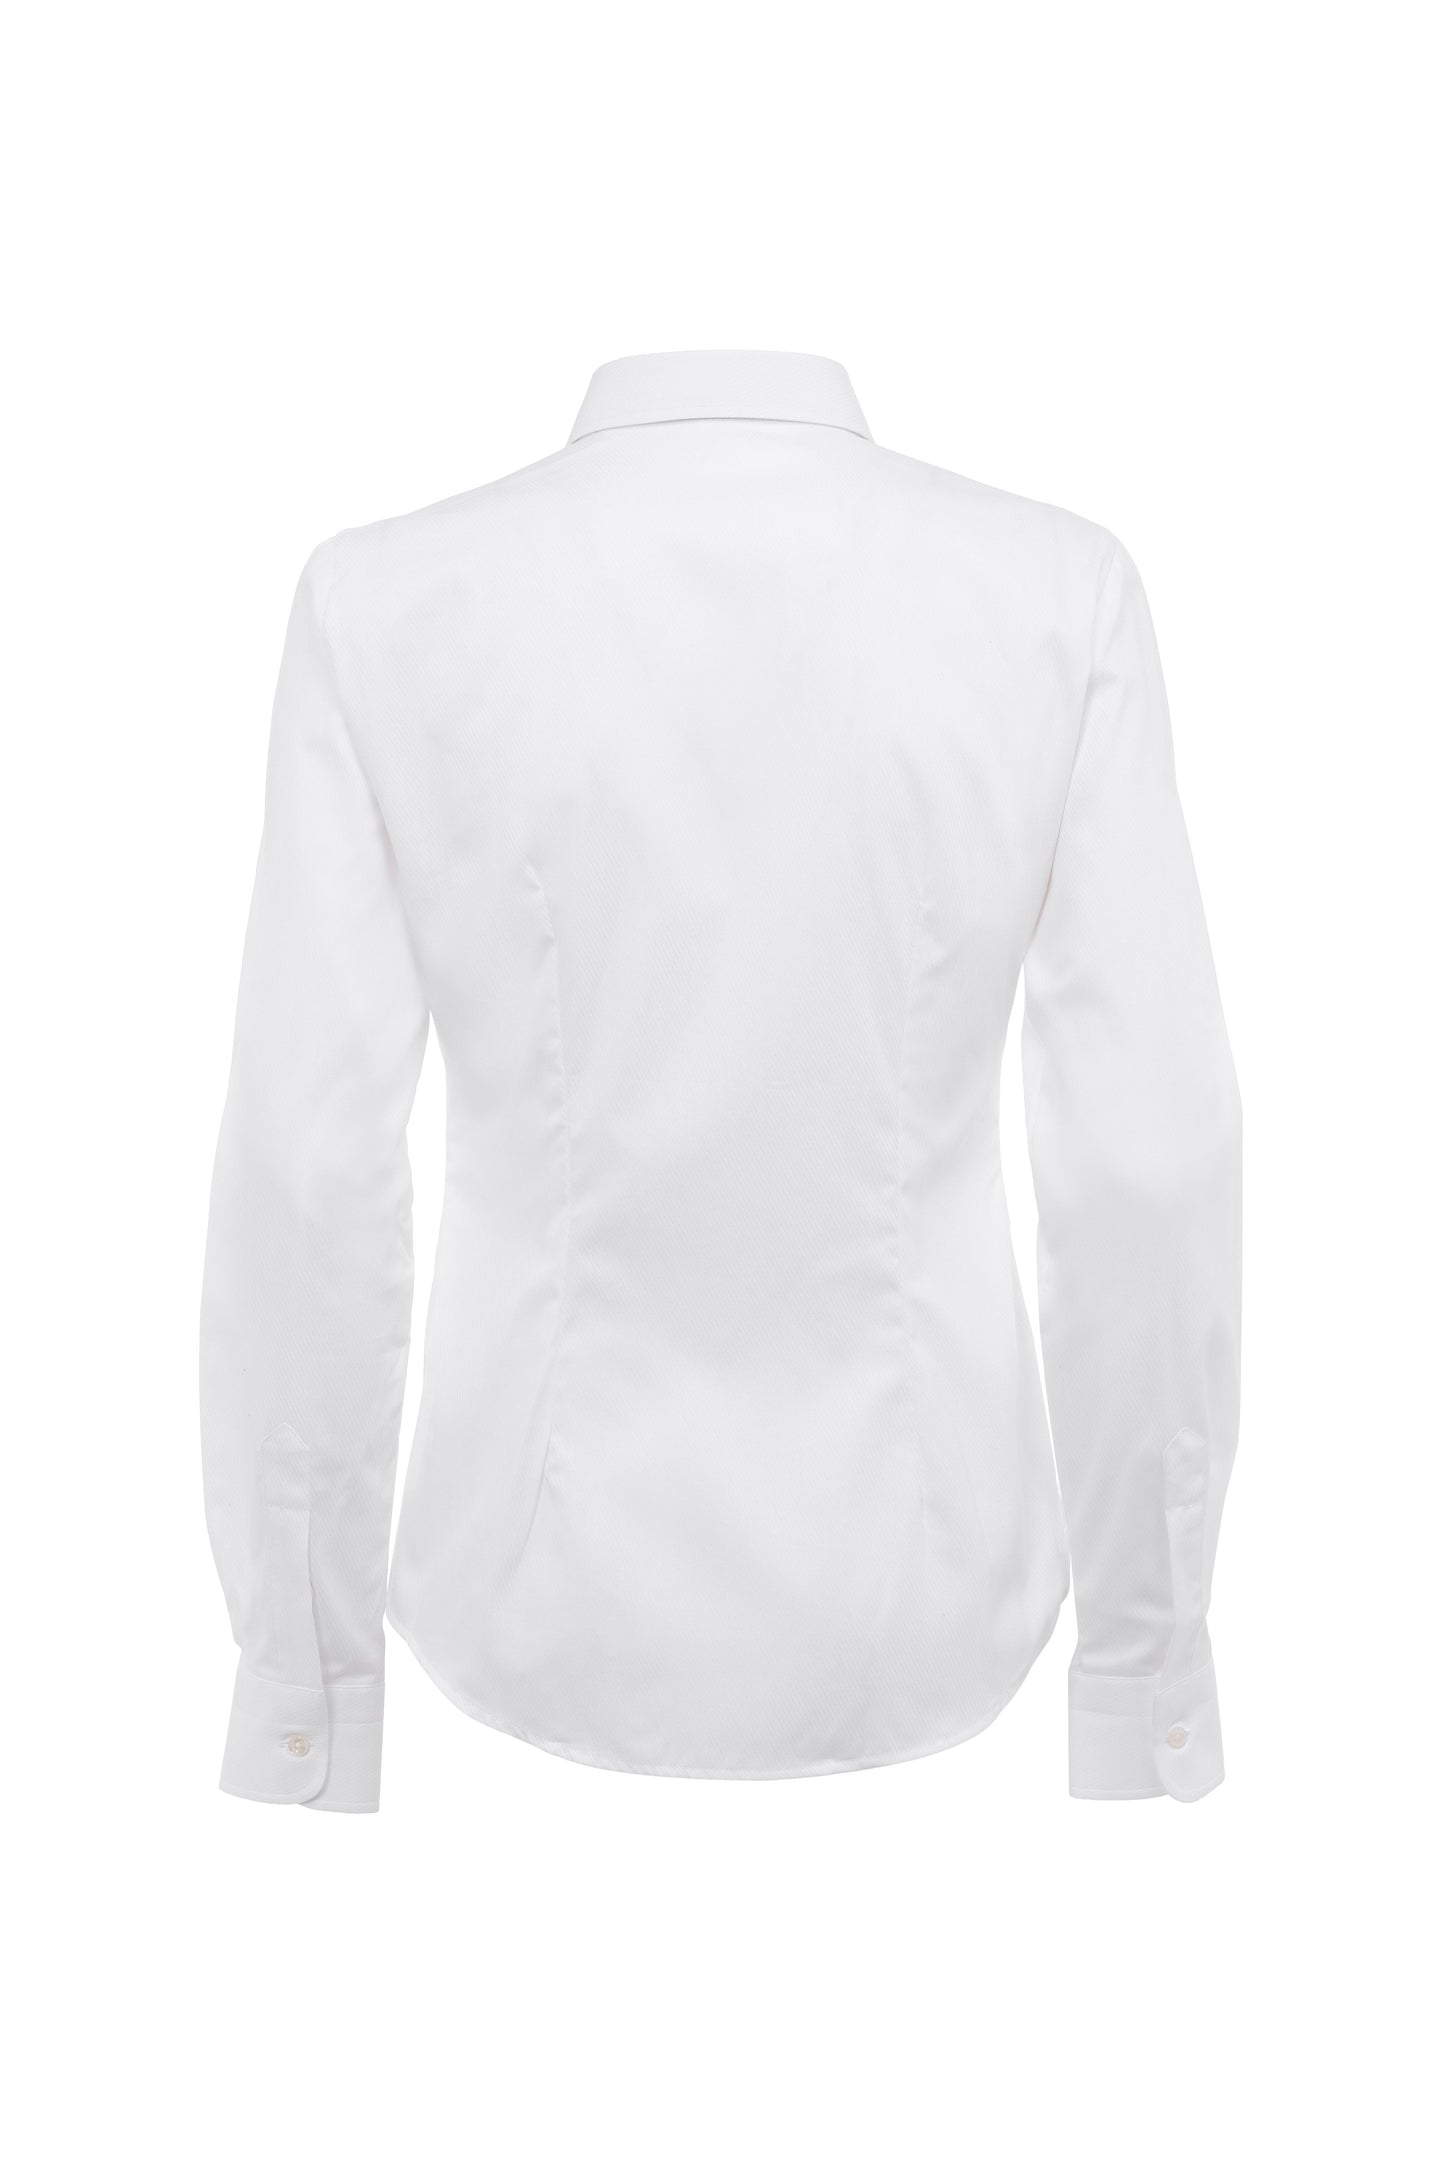 Women's sleeve blouse white